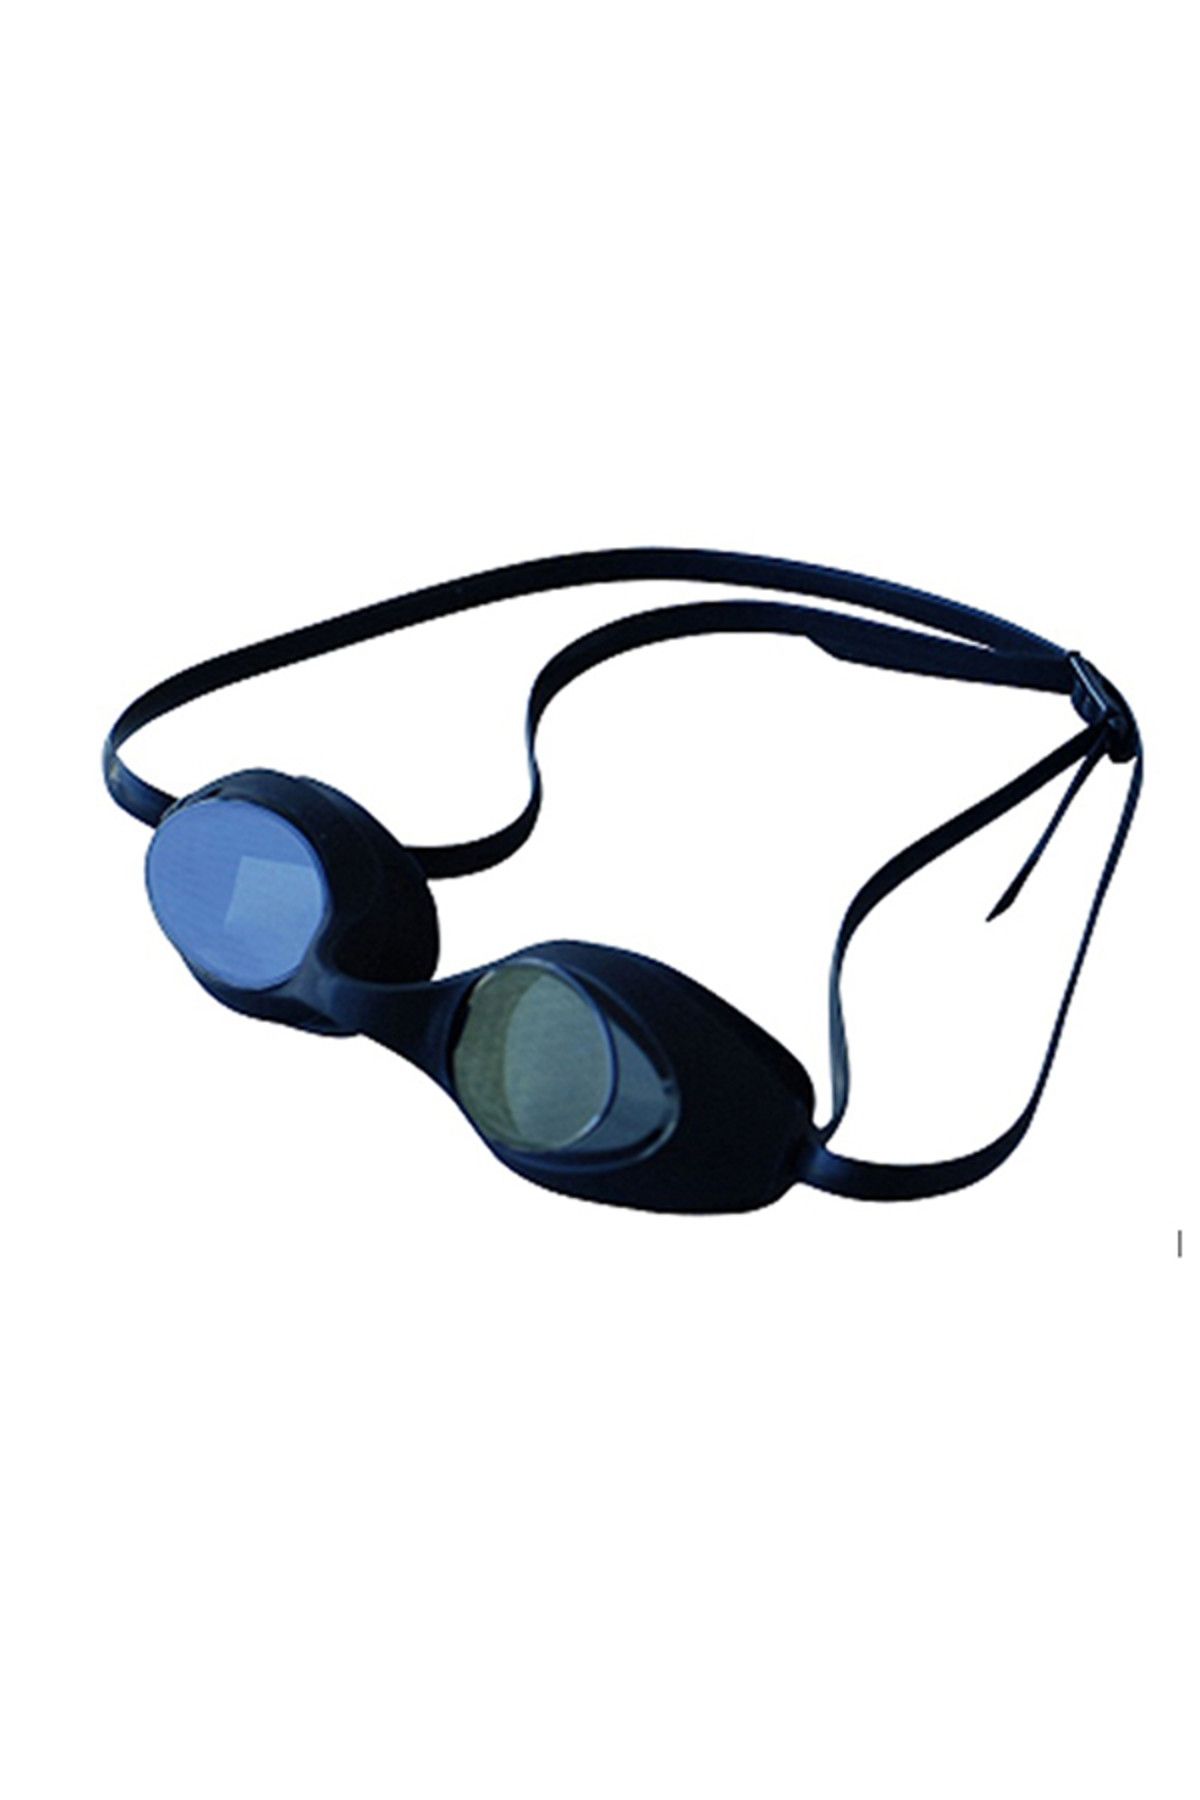 Dunlop Yüzücü Gözlüğü 2329-4 Siyah Renk